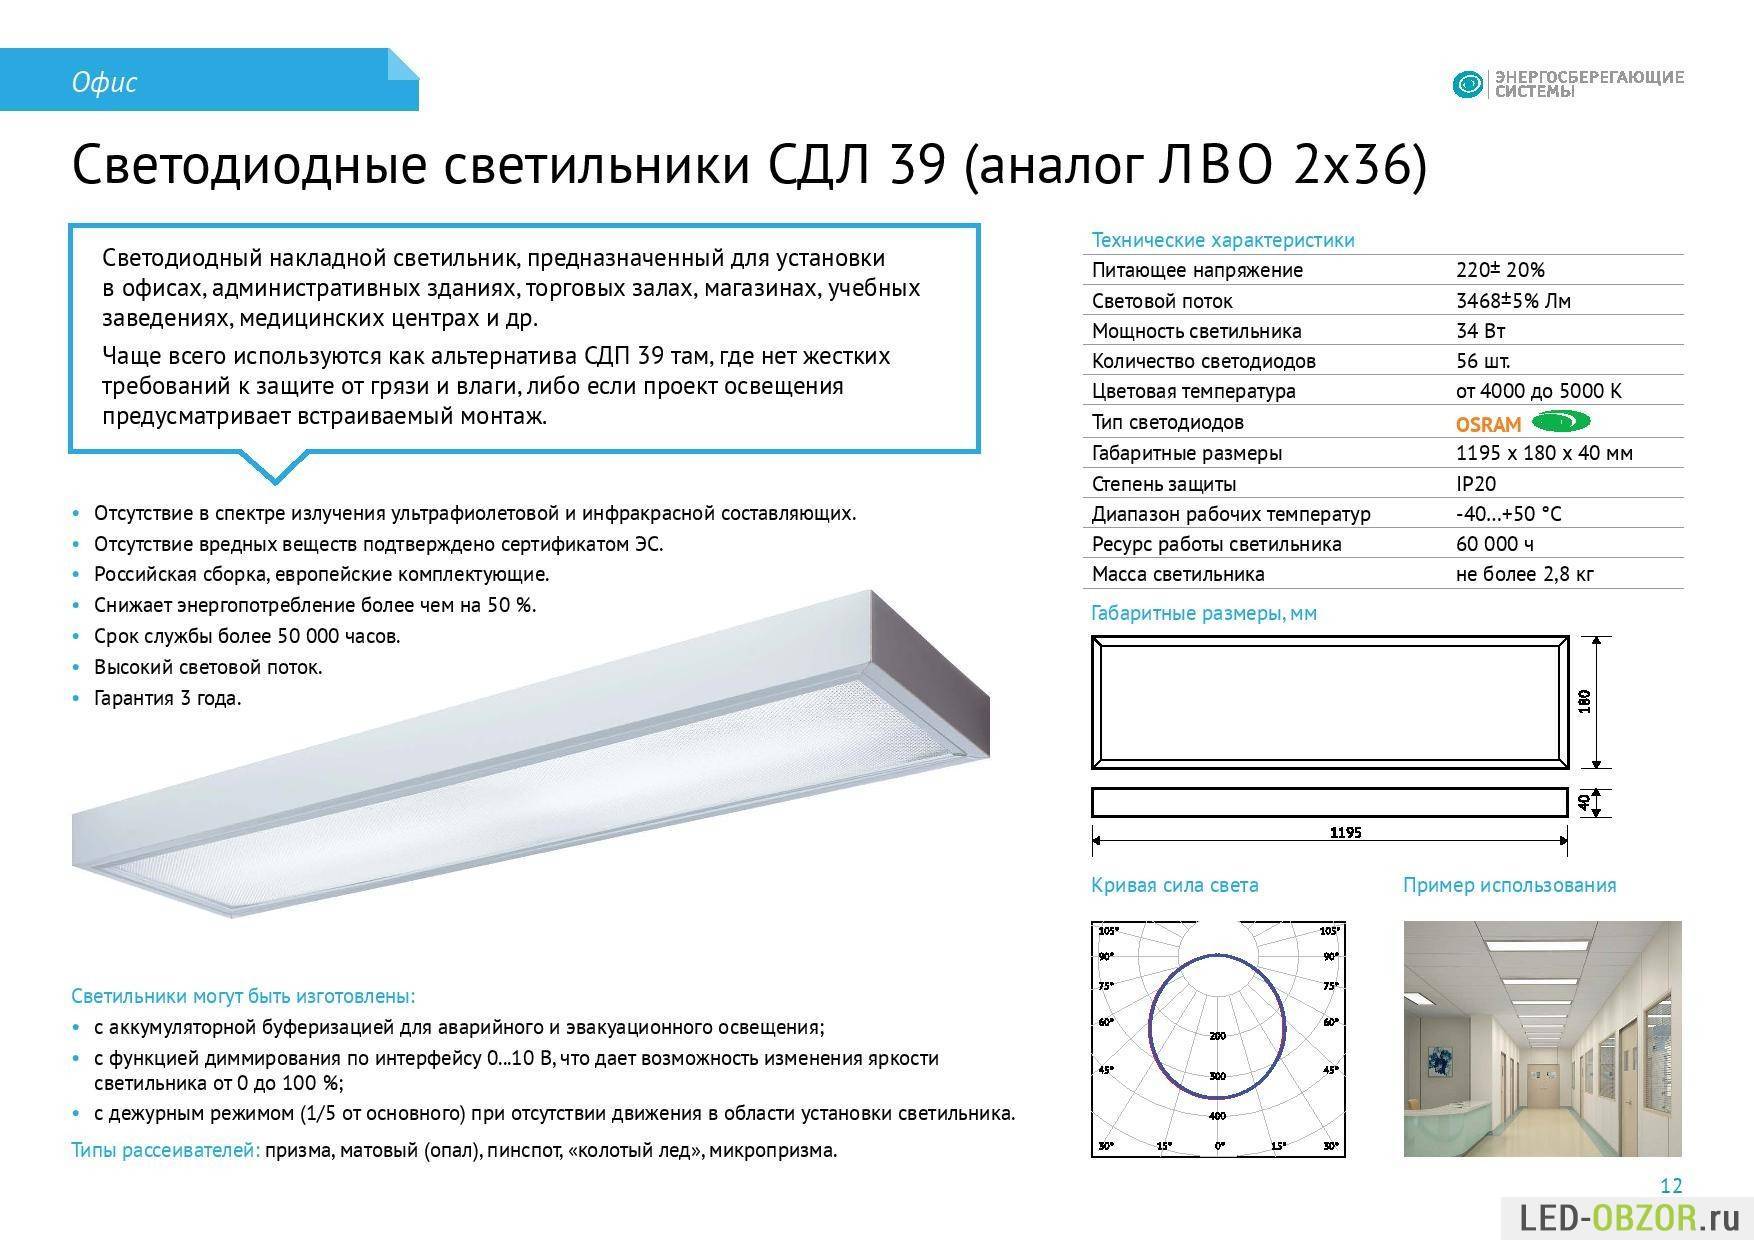 Что такое led-подсветка? типы подсветки | myblaze.ru